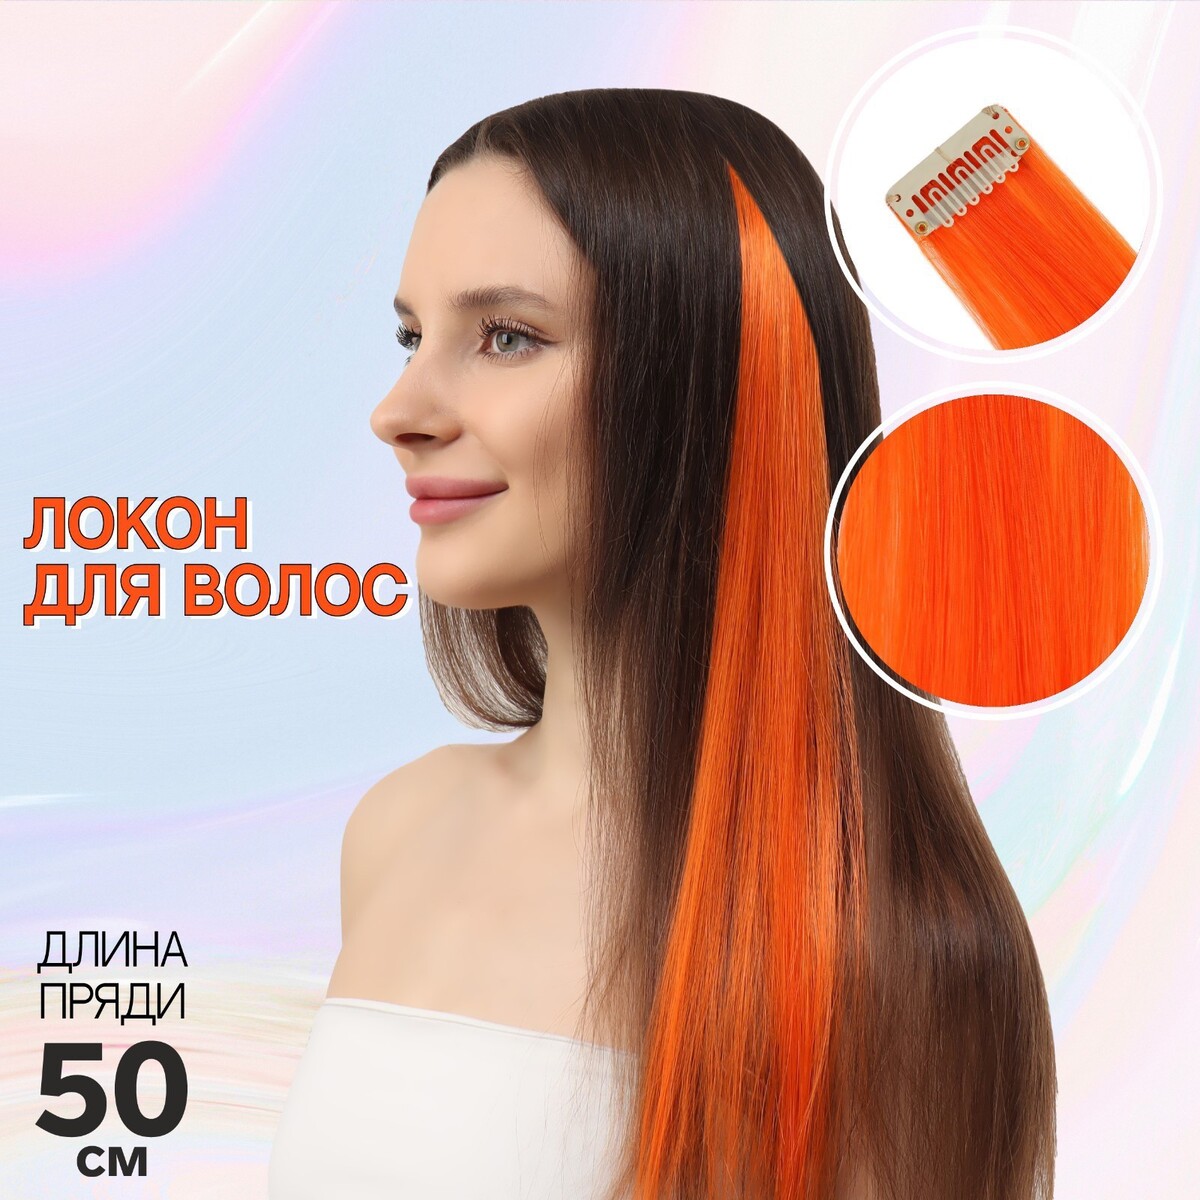 Локон накладной, прямой волос, на заколке, 50 см, 5 гр, цвет оранжевый локон накладной единорог прямой волос на заколке 40 см микс